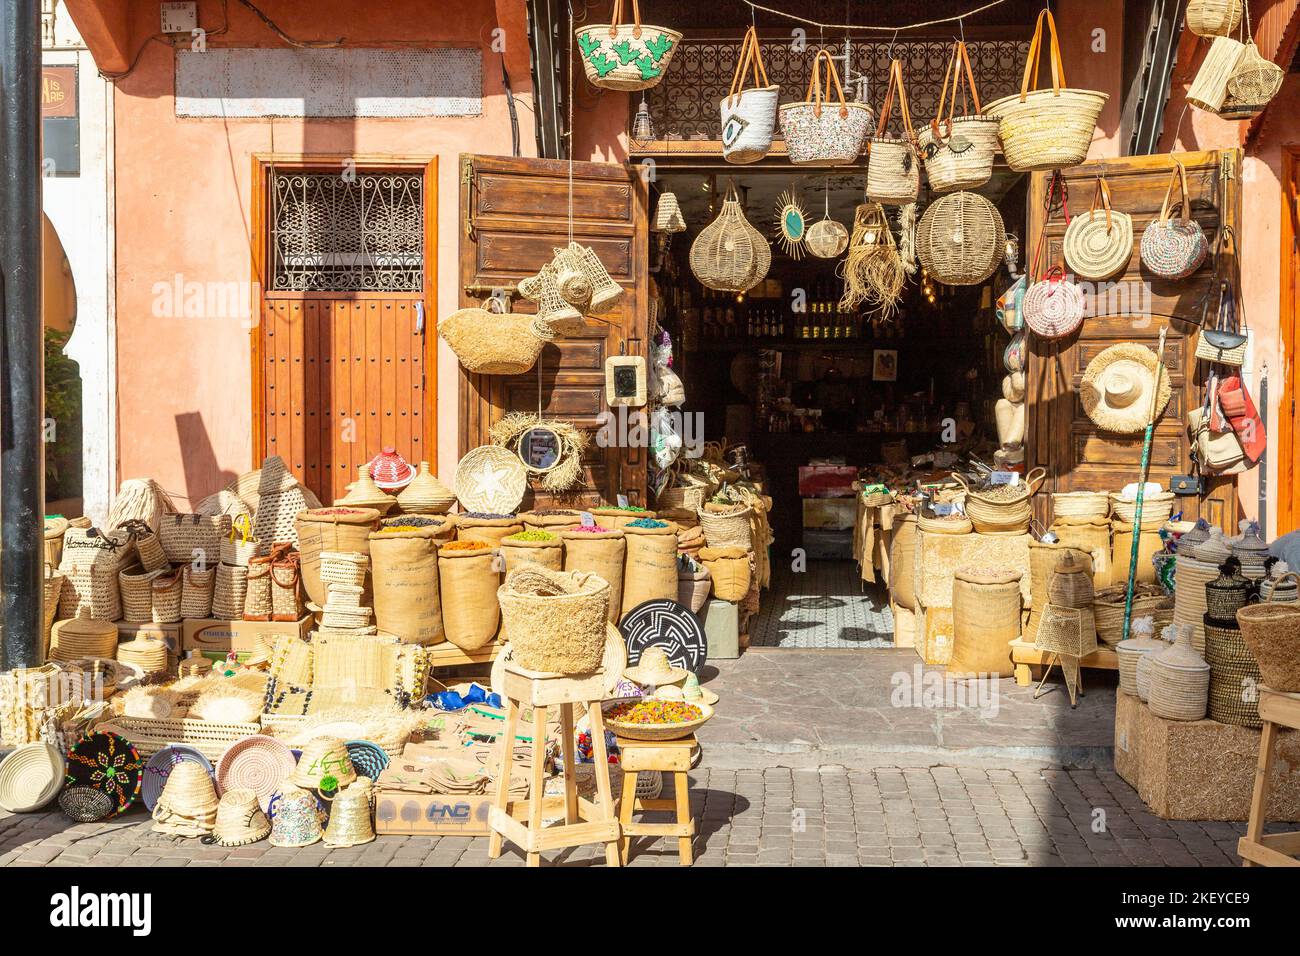 MARRAKECH, MAROCCO - 31st OTT 22: Una bancarella nella Medina di Marrakech che vende cestini in vimini, borse, ciotole e altri oggetti. Foto Stock